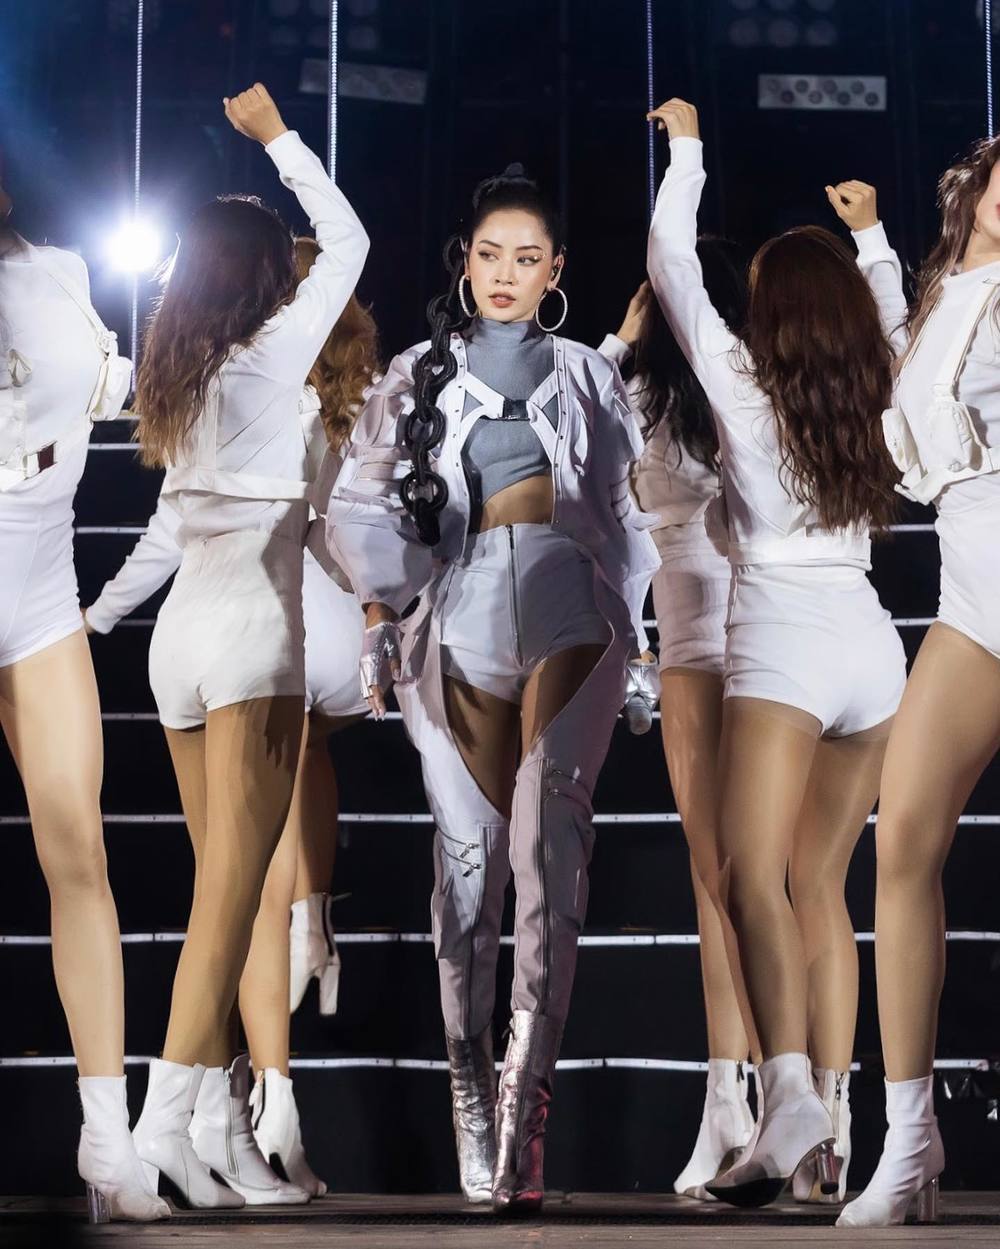 Top 10 sự kiện V-pop 2020: Sơn Tùng dẫn đầu với 2 lần comeback